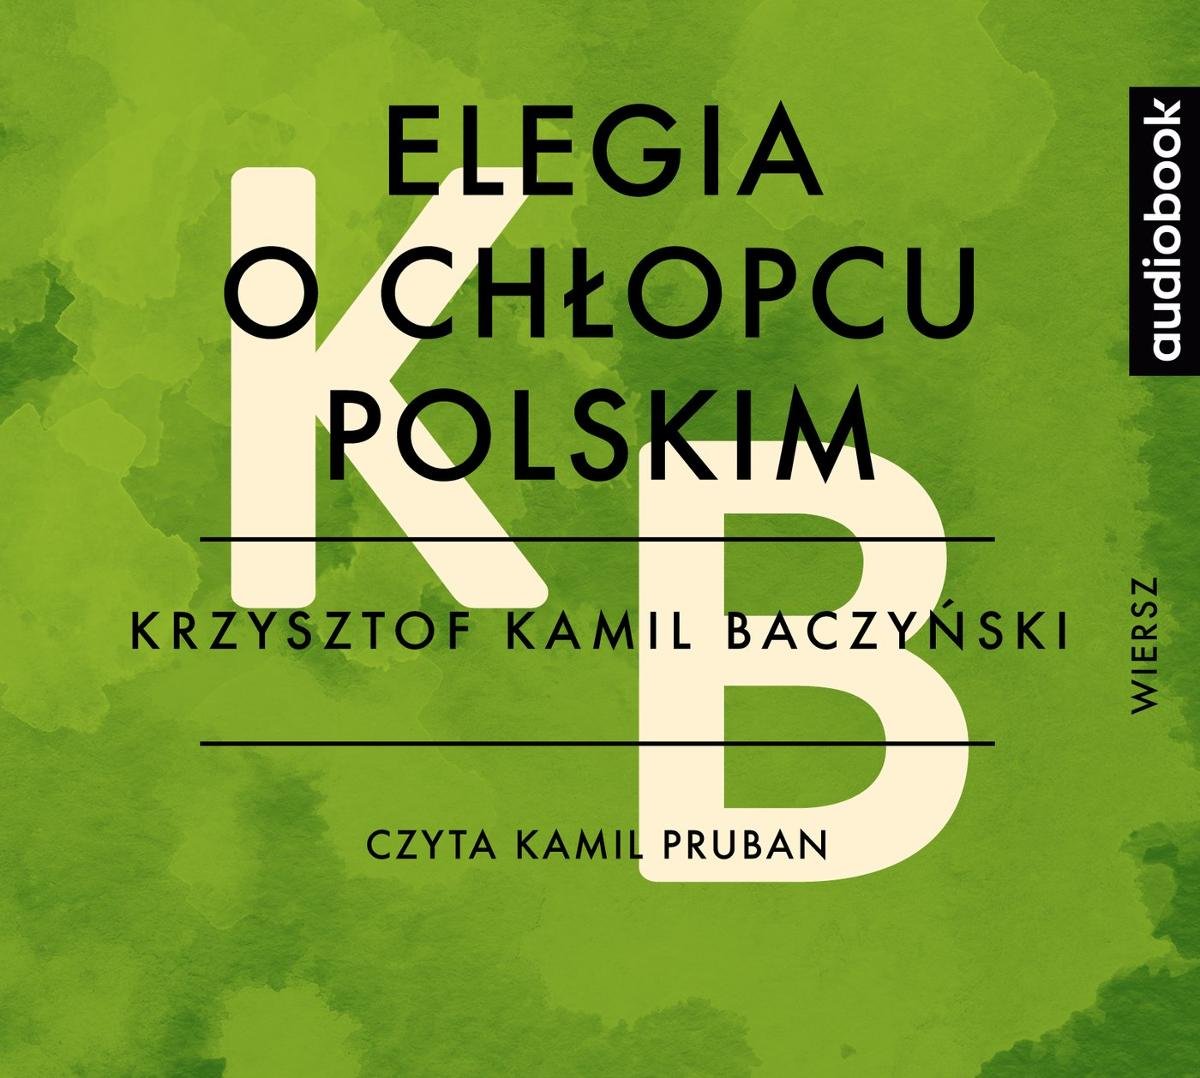 Elegia O Chłopcu Polskim Podmiot Liryczny Elegia o chłopcu polskim - Baczyński Krzysztof Kamil | Audiobook Sklep